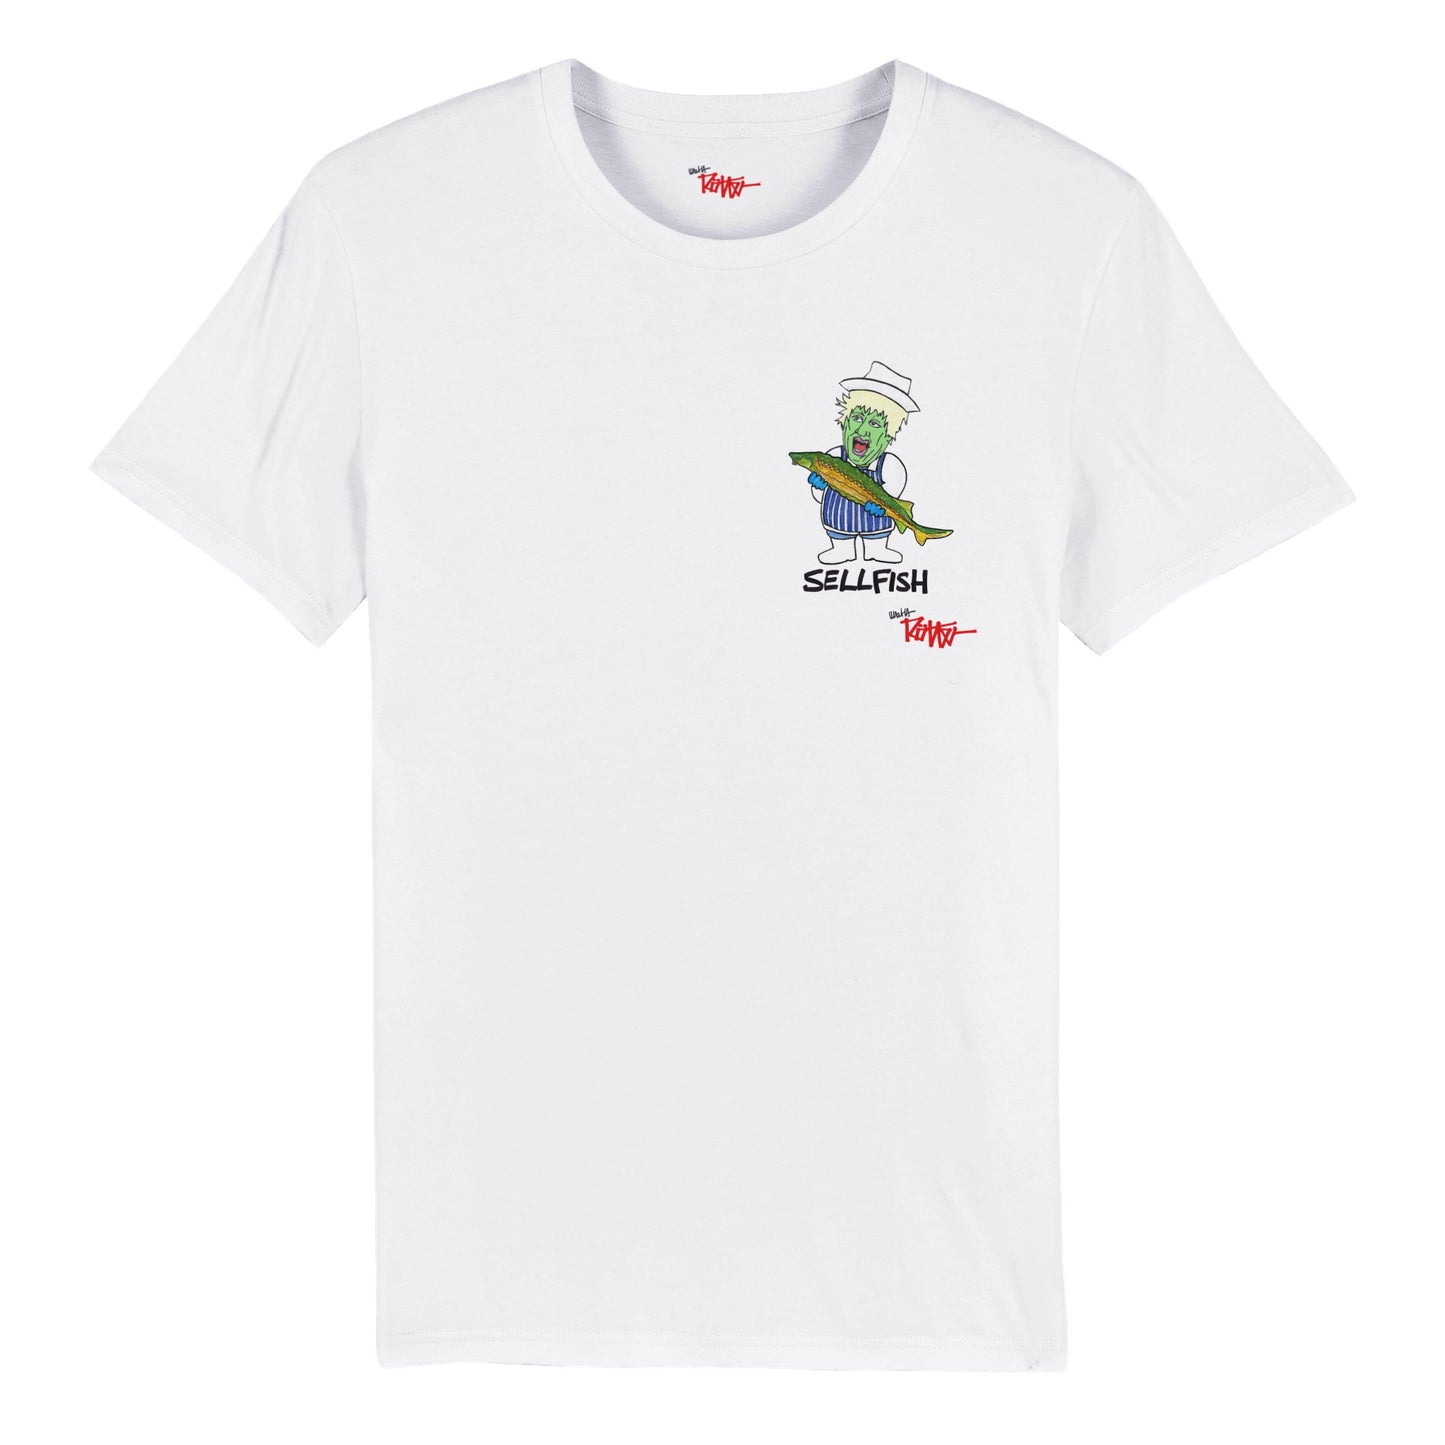 BOJEYMAN - SELLFISH - Organic Unisex Crewneck T-shirt